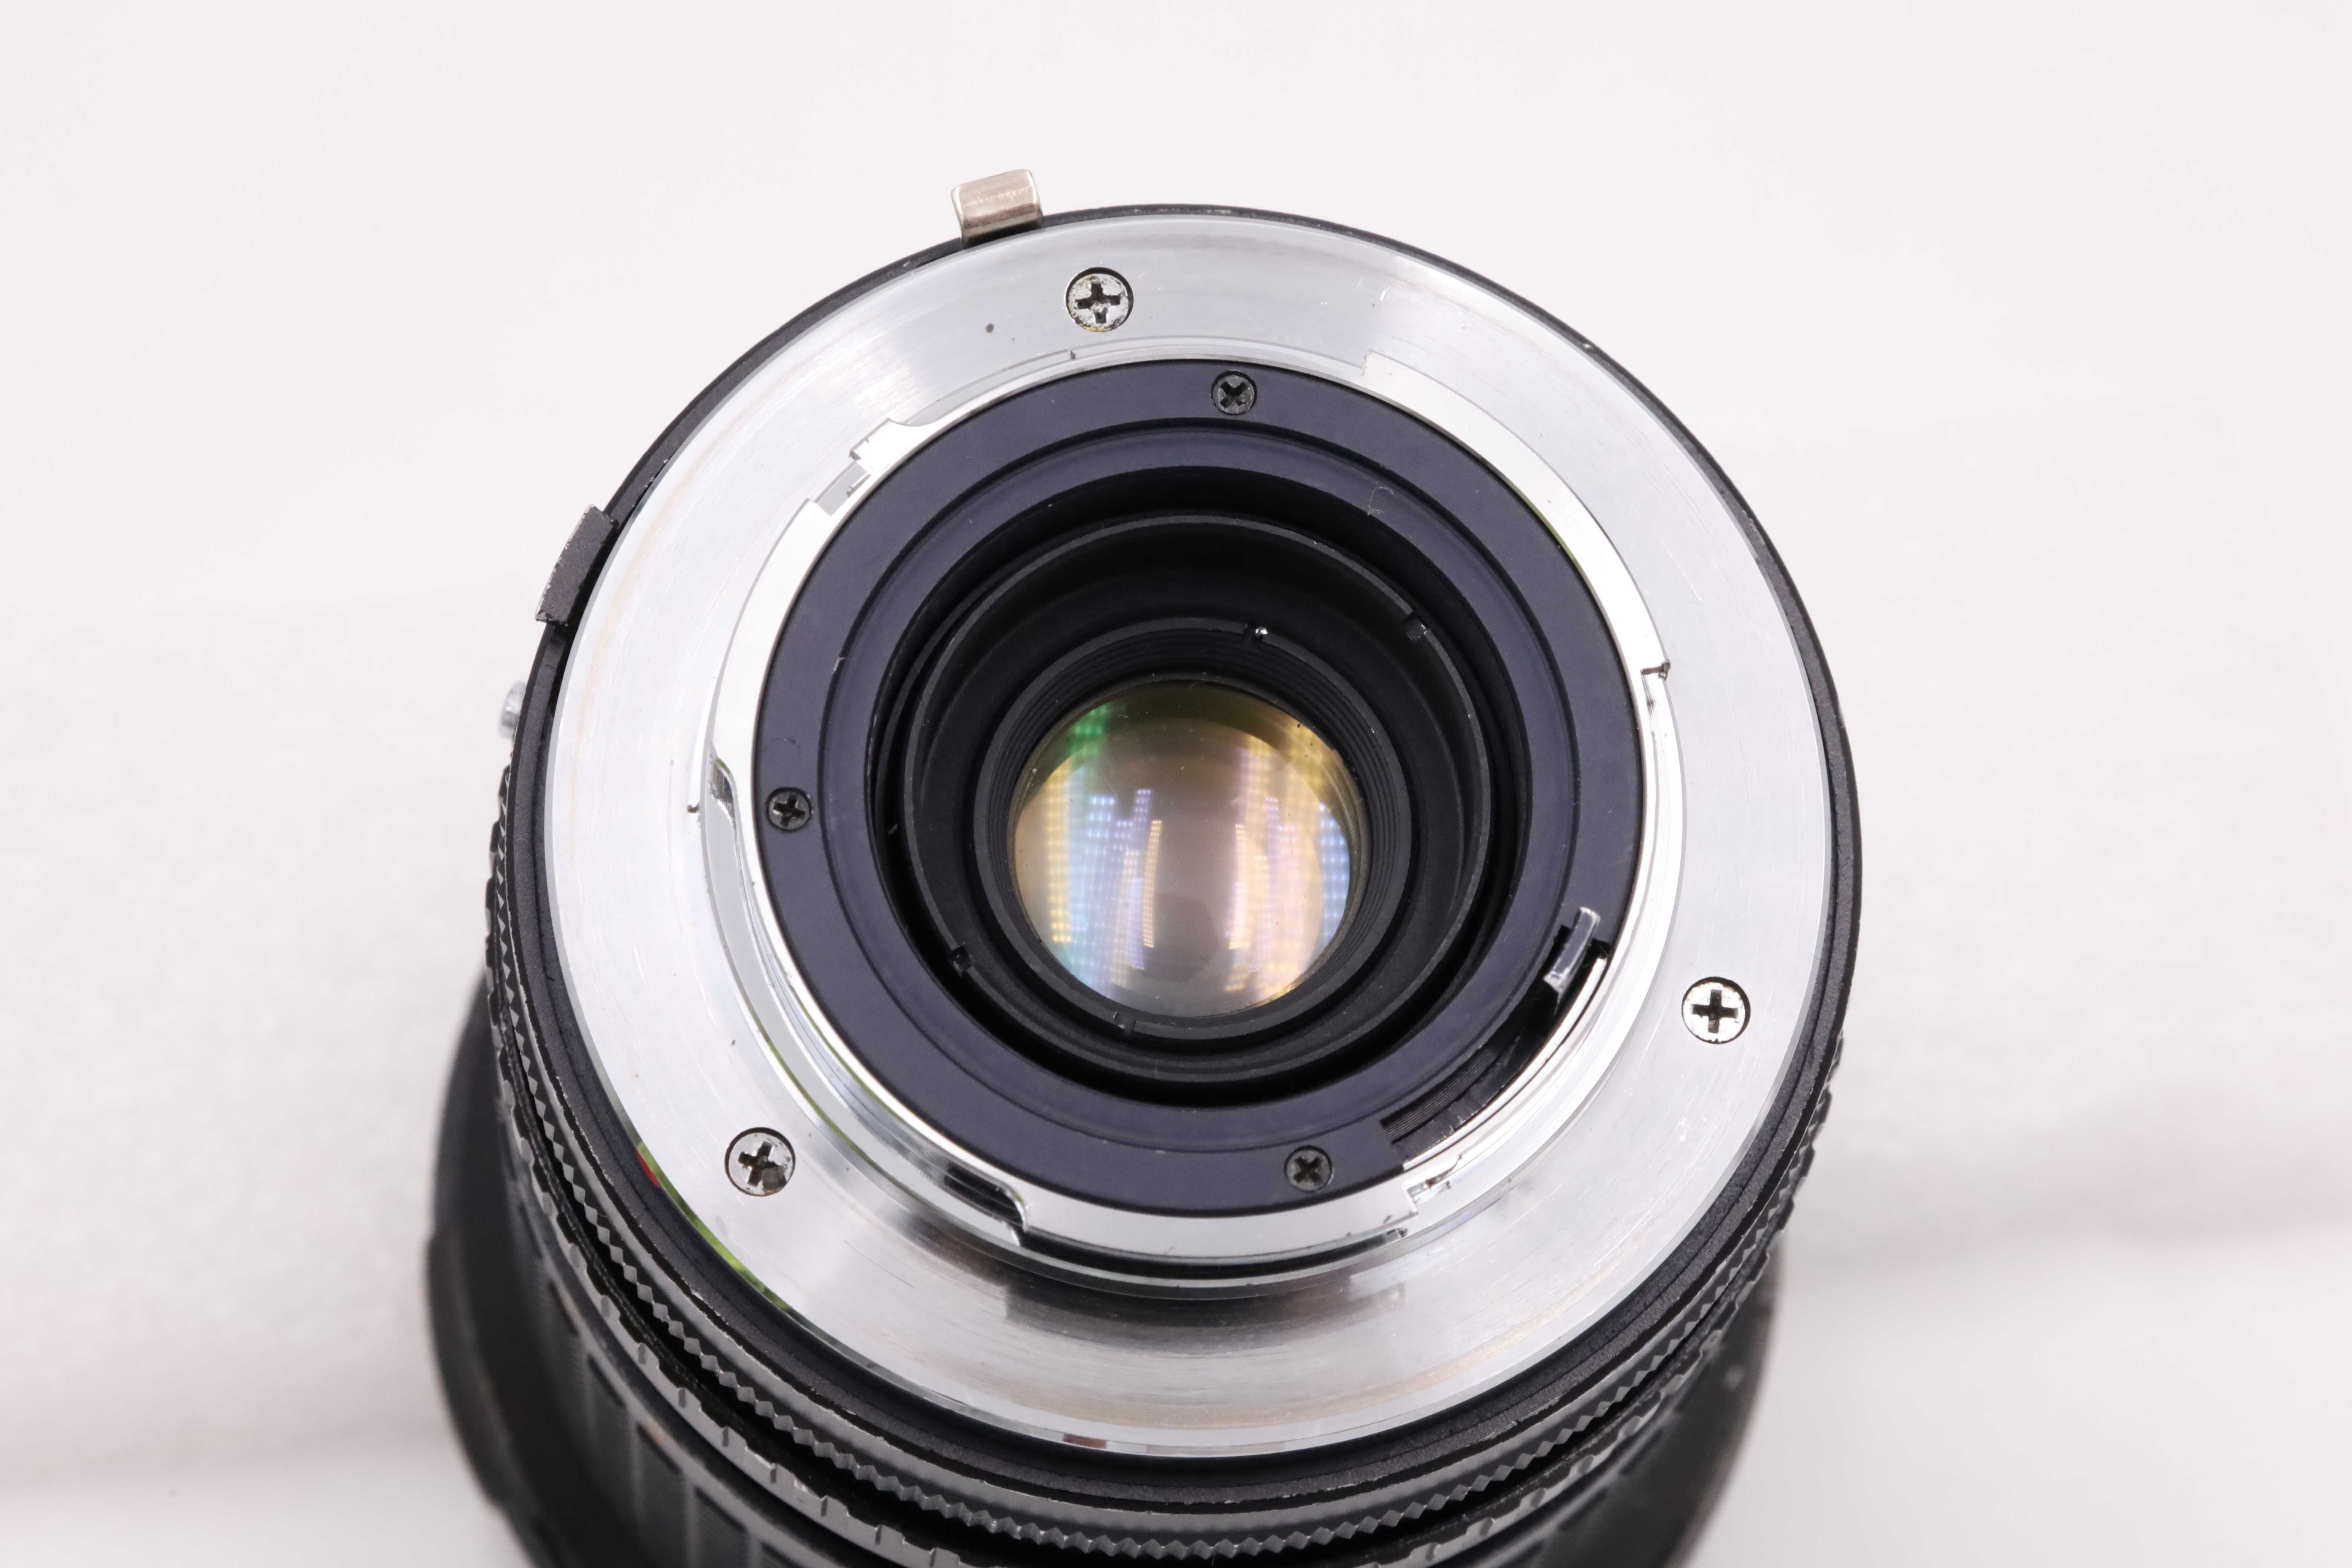 Obiektyw Auto Makinon MC zoom 28-80 mm 3,5-4,5 Canon FD